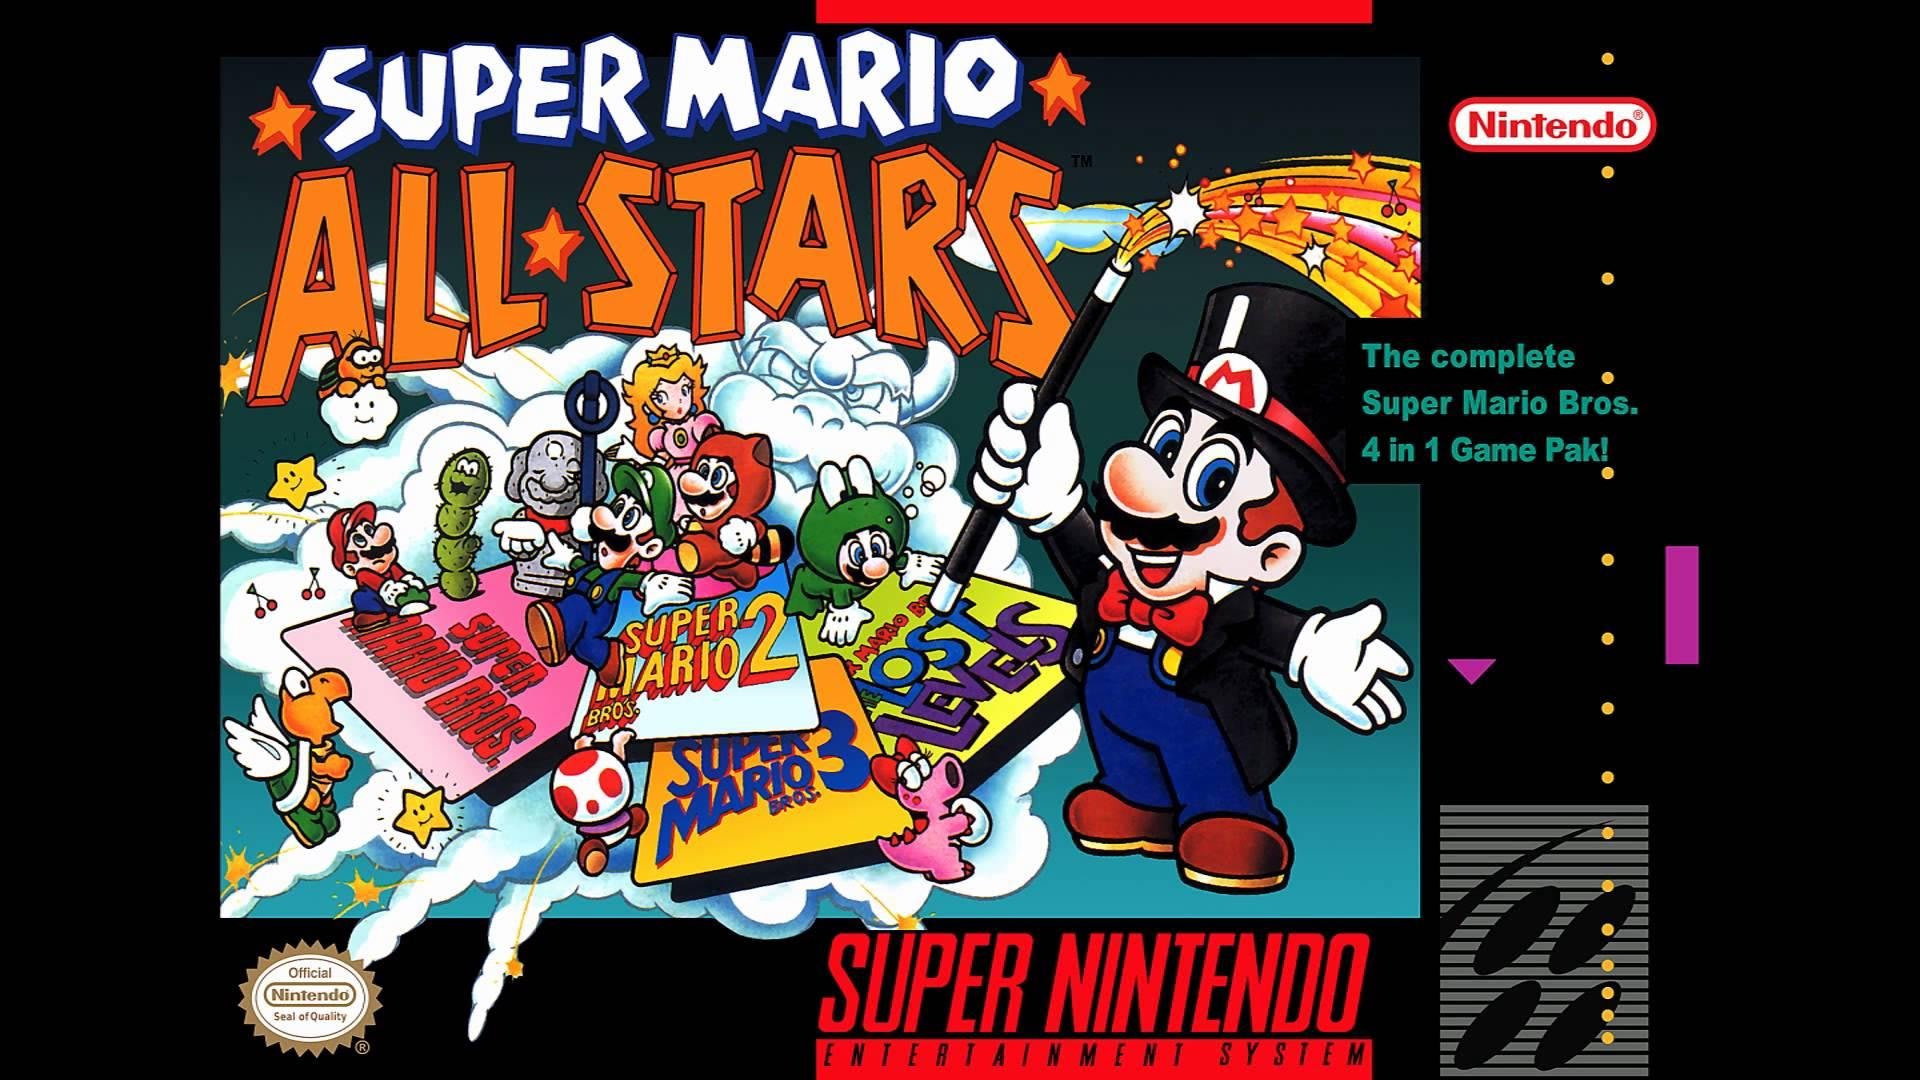 Veja o Top 10 de jogos mais vendidos da história do Super Nintendo -  26/08/2017 - UOL Start